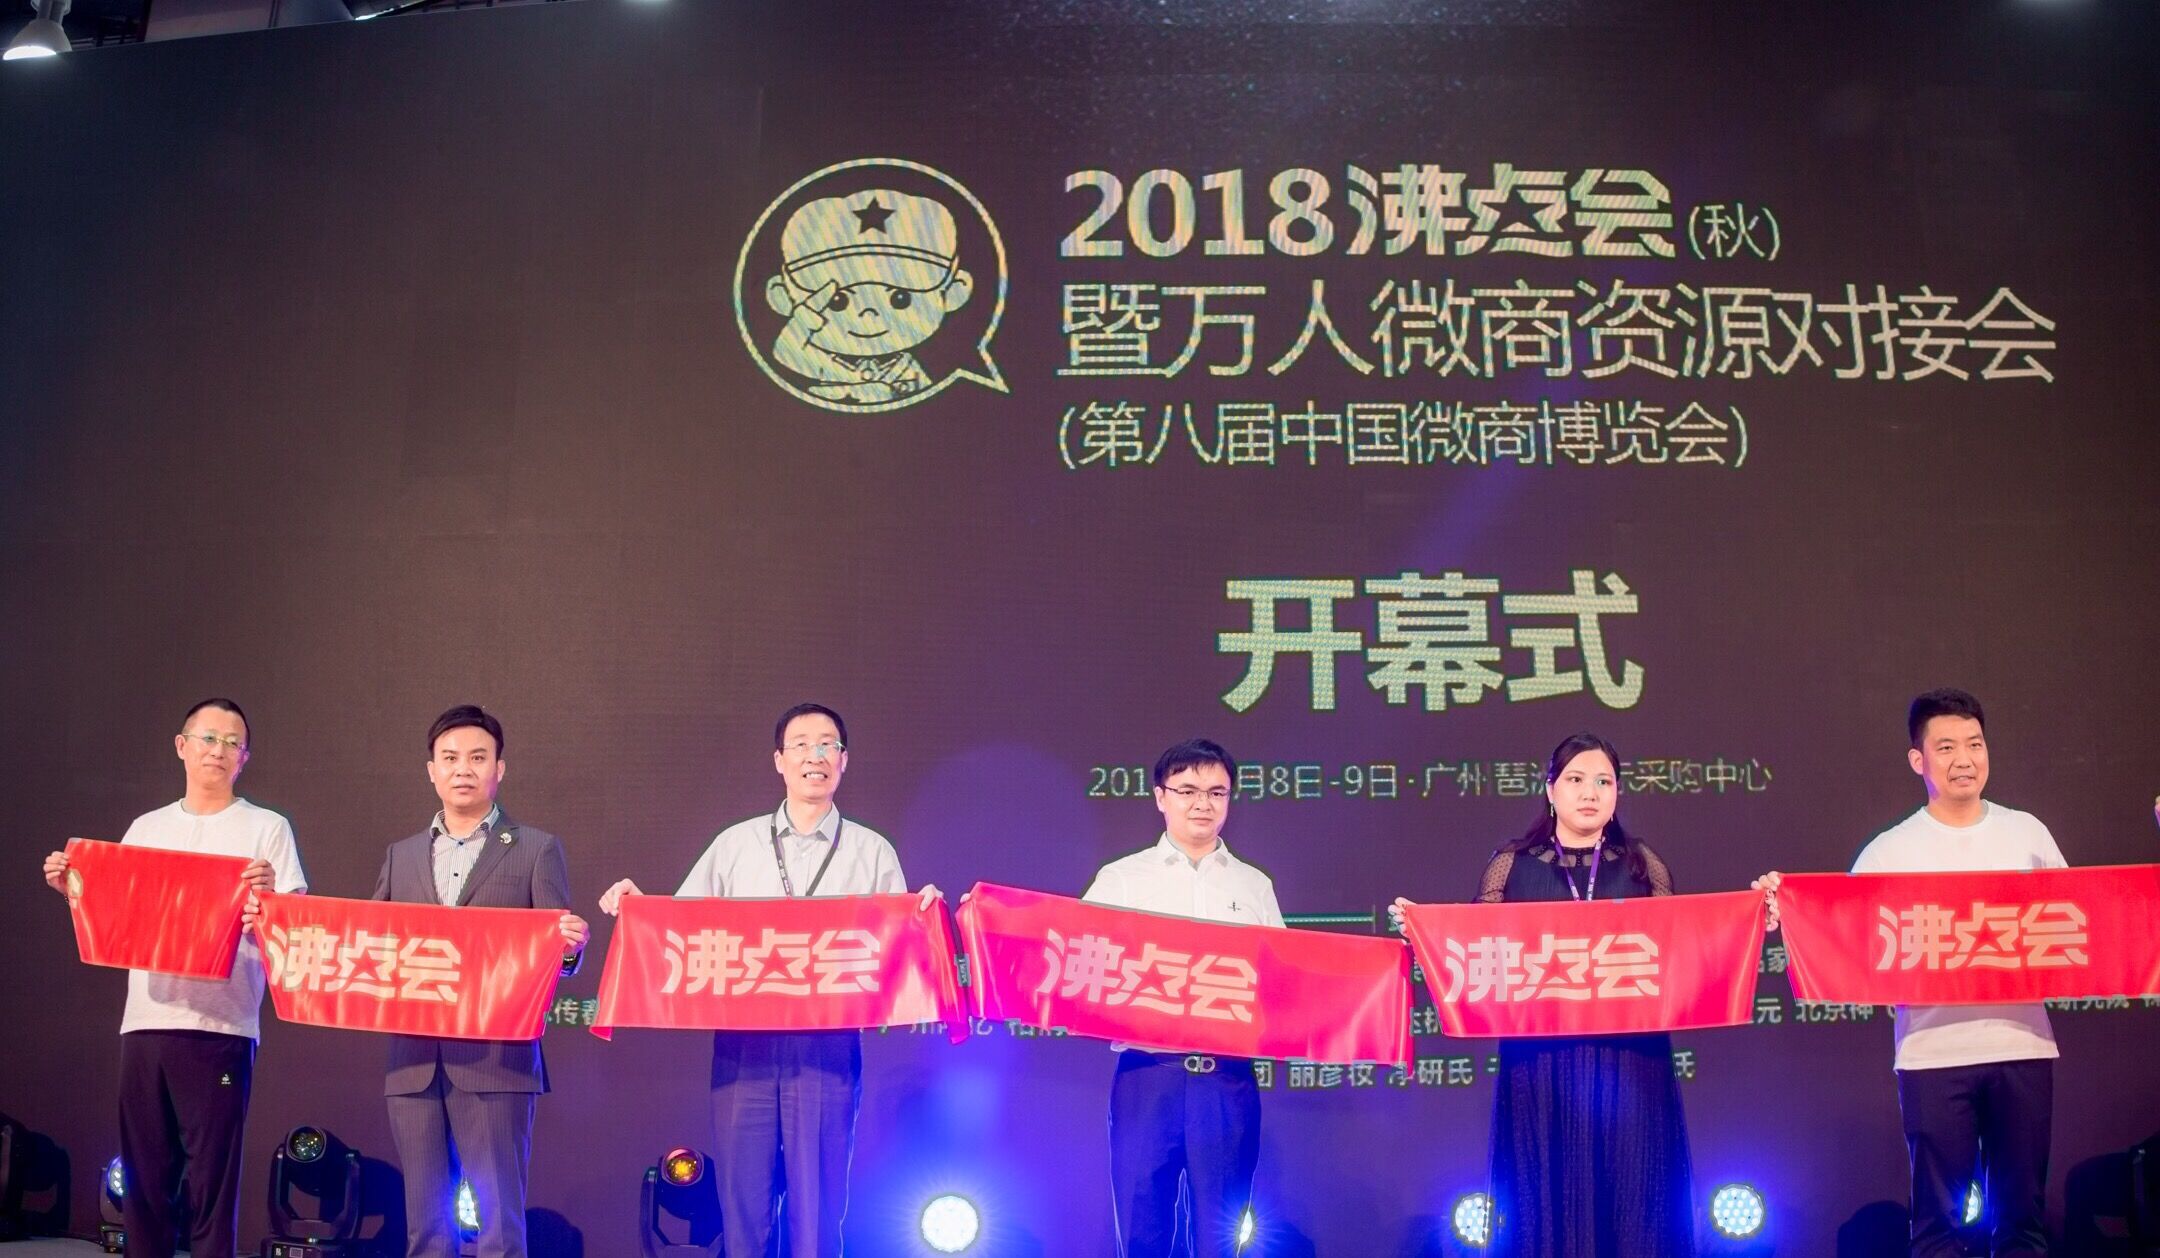 2018沸点会暨万人微商资源对接会在广州举办